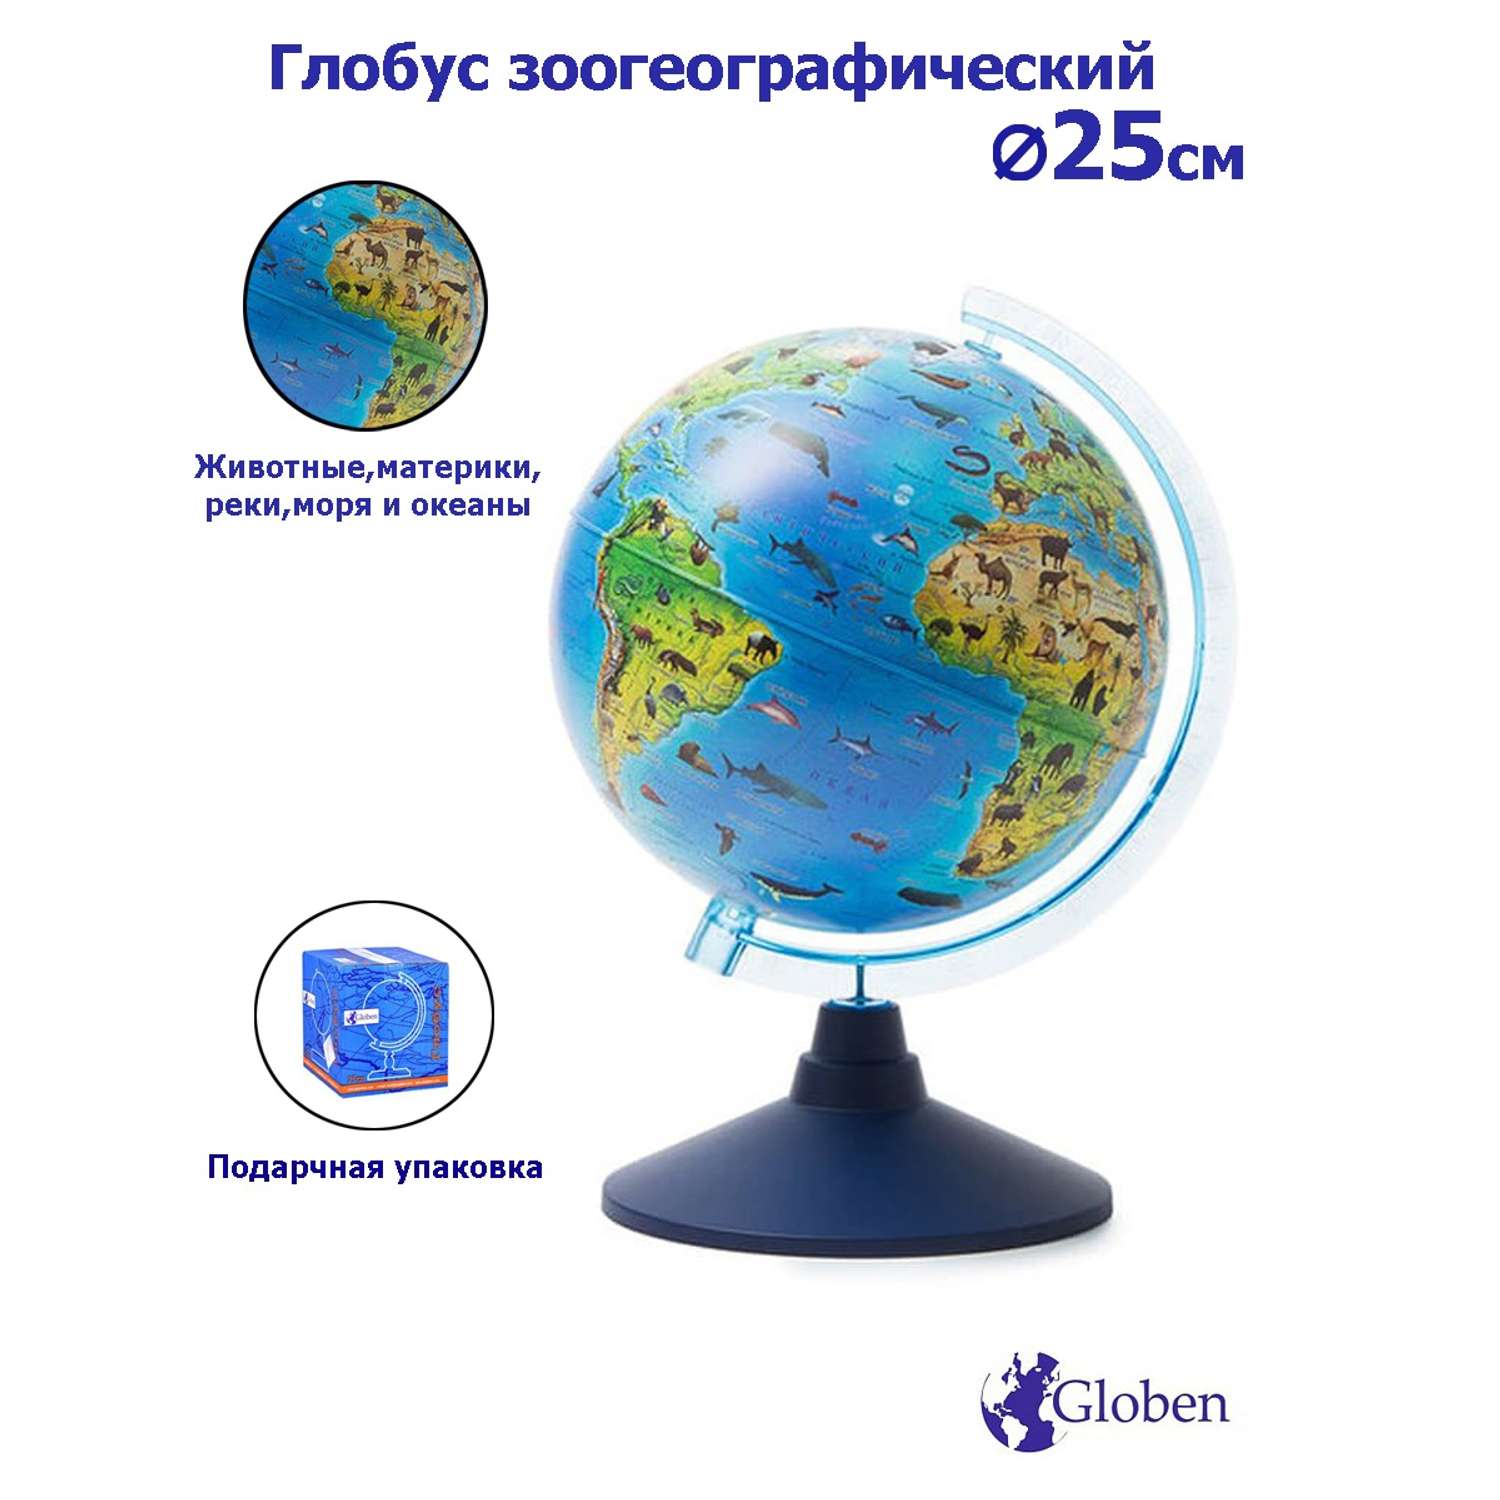 Глобус Globen Зоогеографический детский диаметром 25 см - фото 1